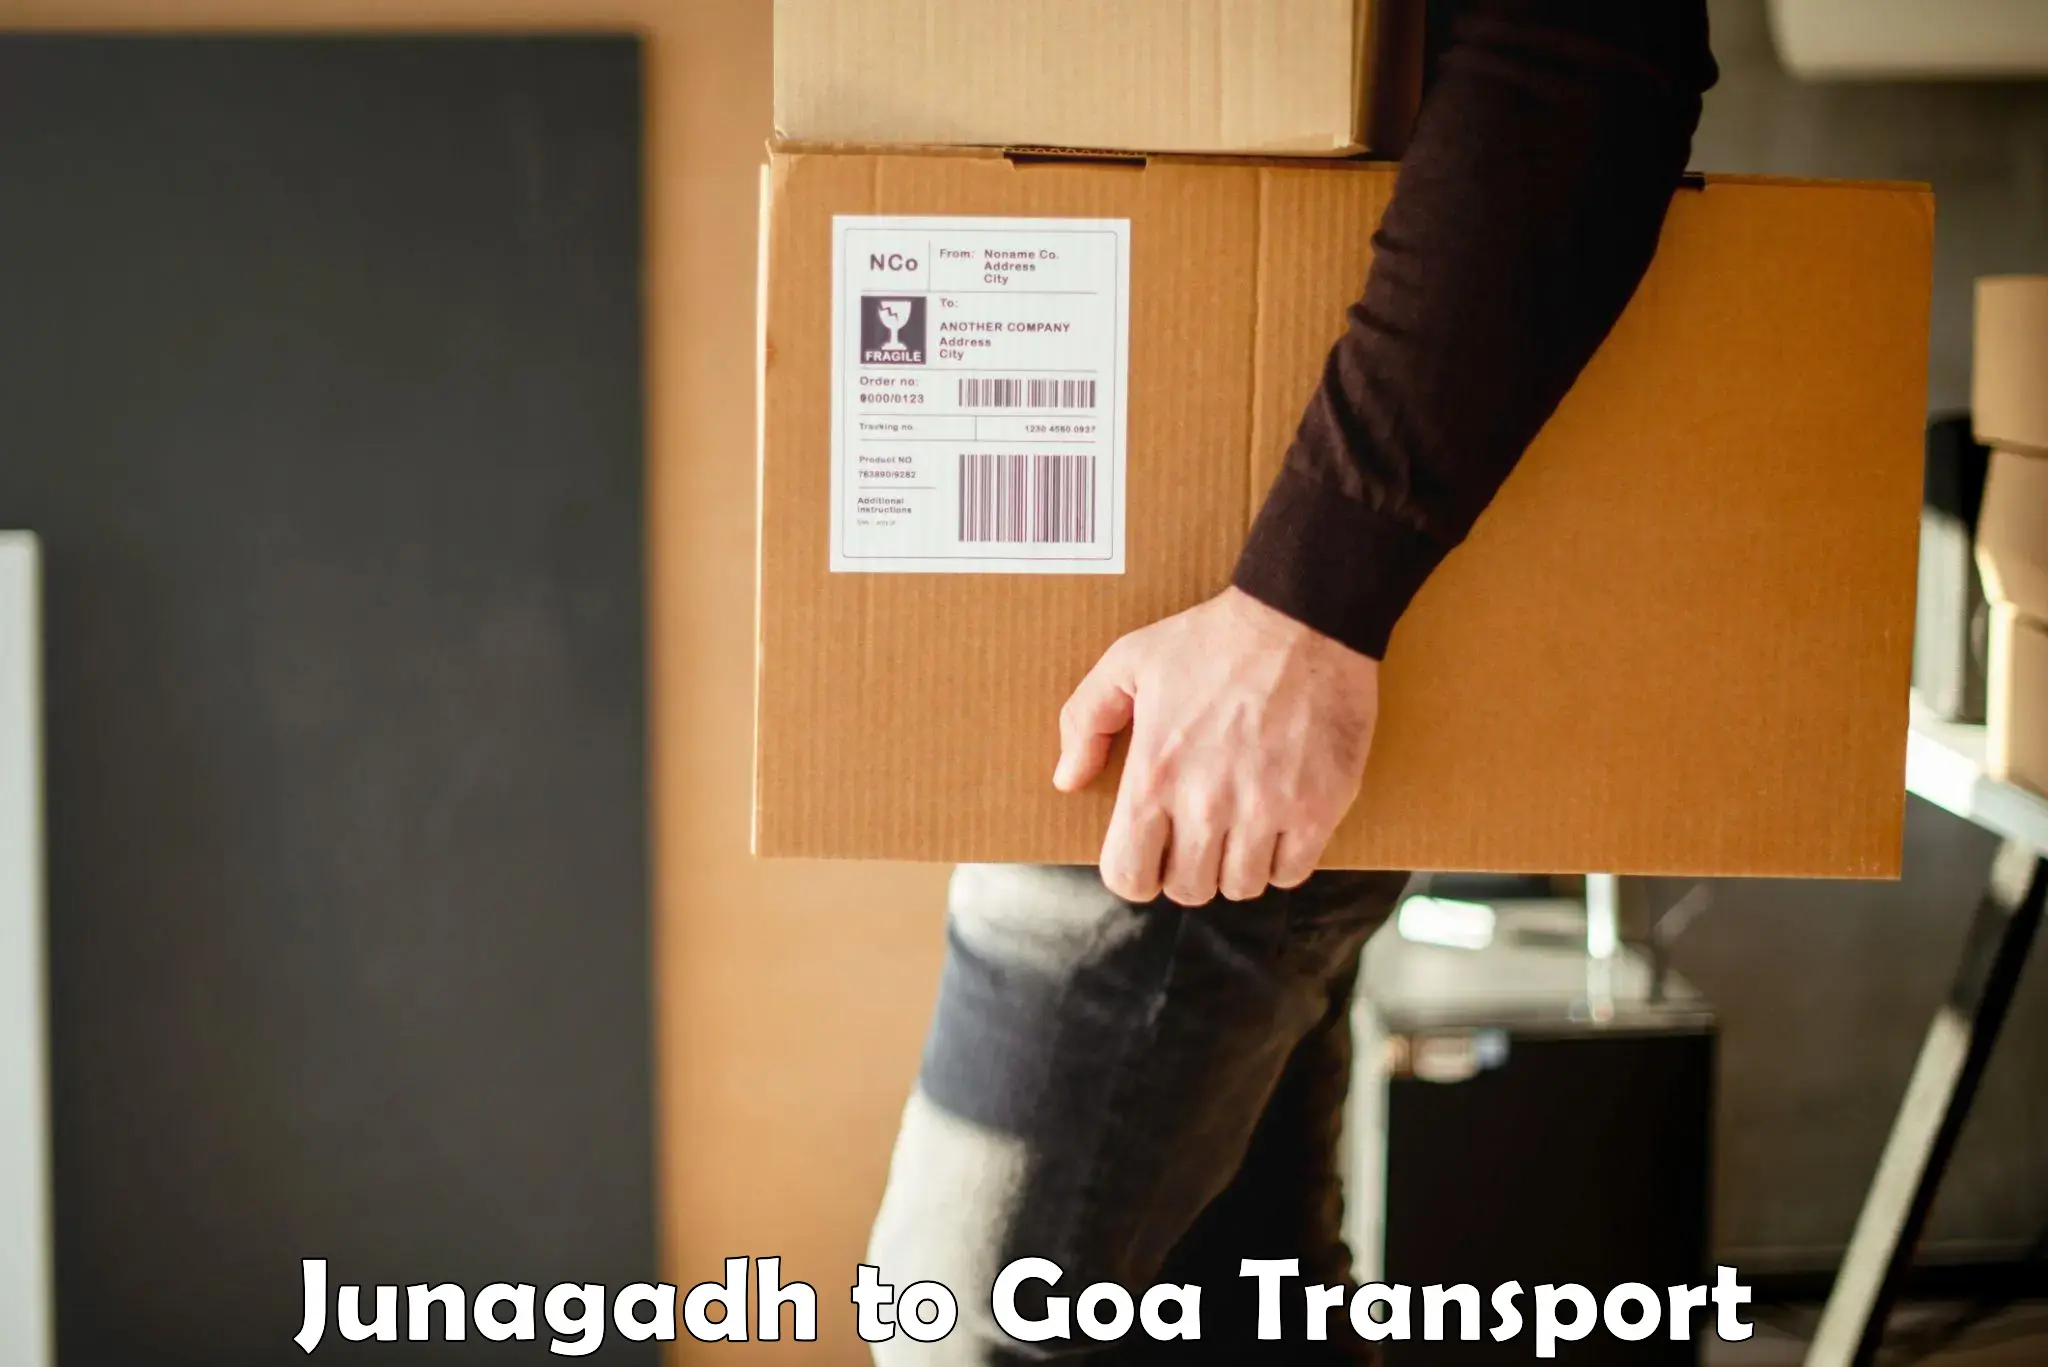 Goods delivery service Junagadh to Ponda